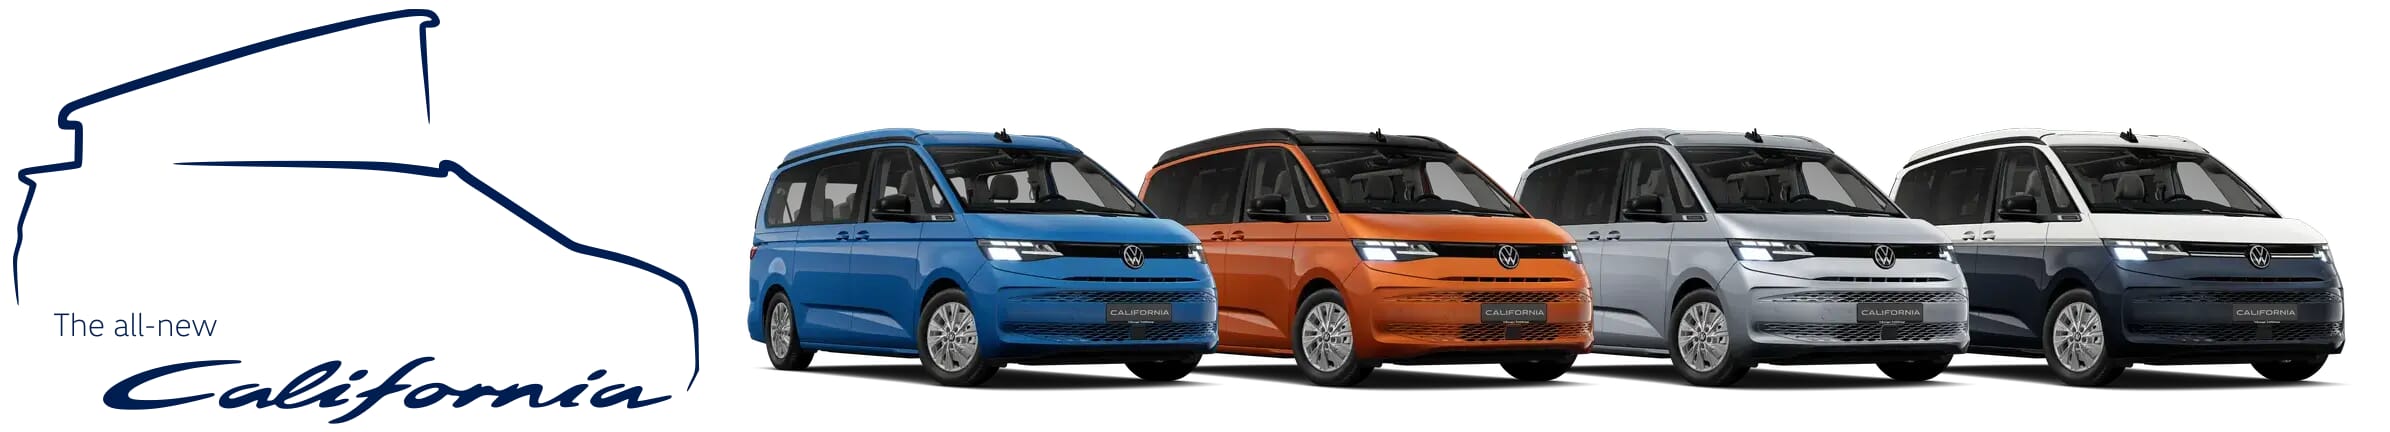 Reihe von vier neuen Volkswagen California T7 Modellen von links nach rechts: blauer Beach, orangener Beach Camper, grauer Coast und zweifarbiger blau-weißer Ocean, mit dem Text ‘The all-new California’.